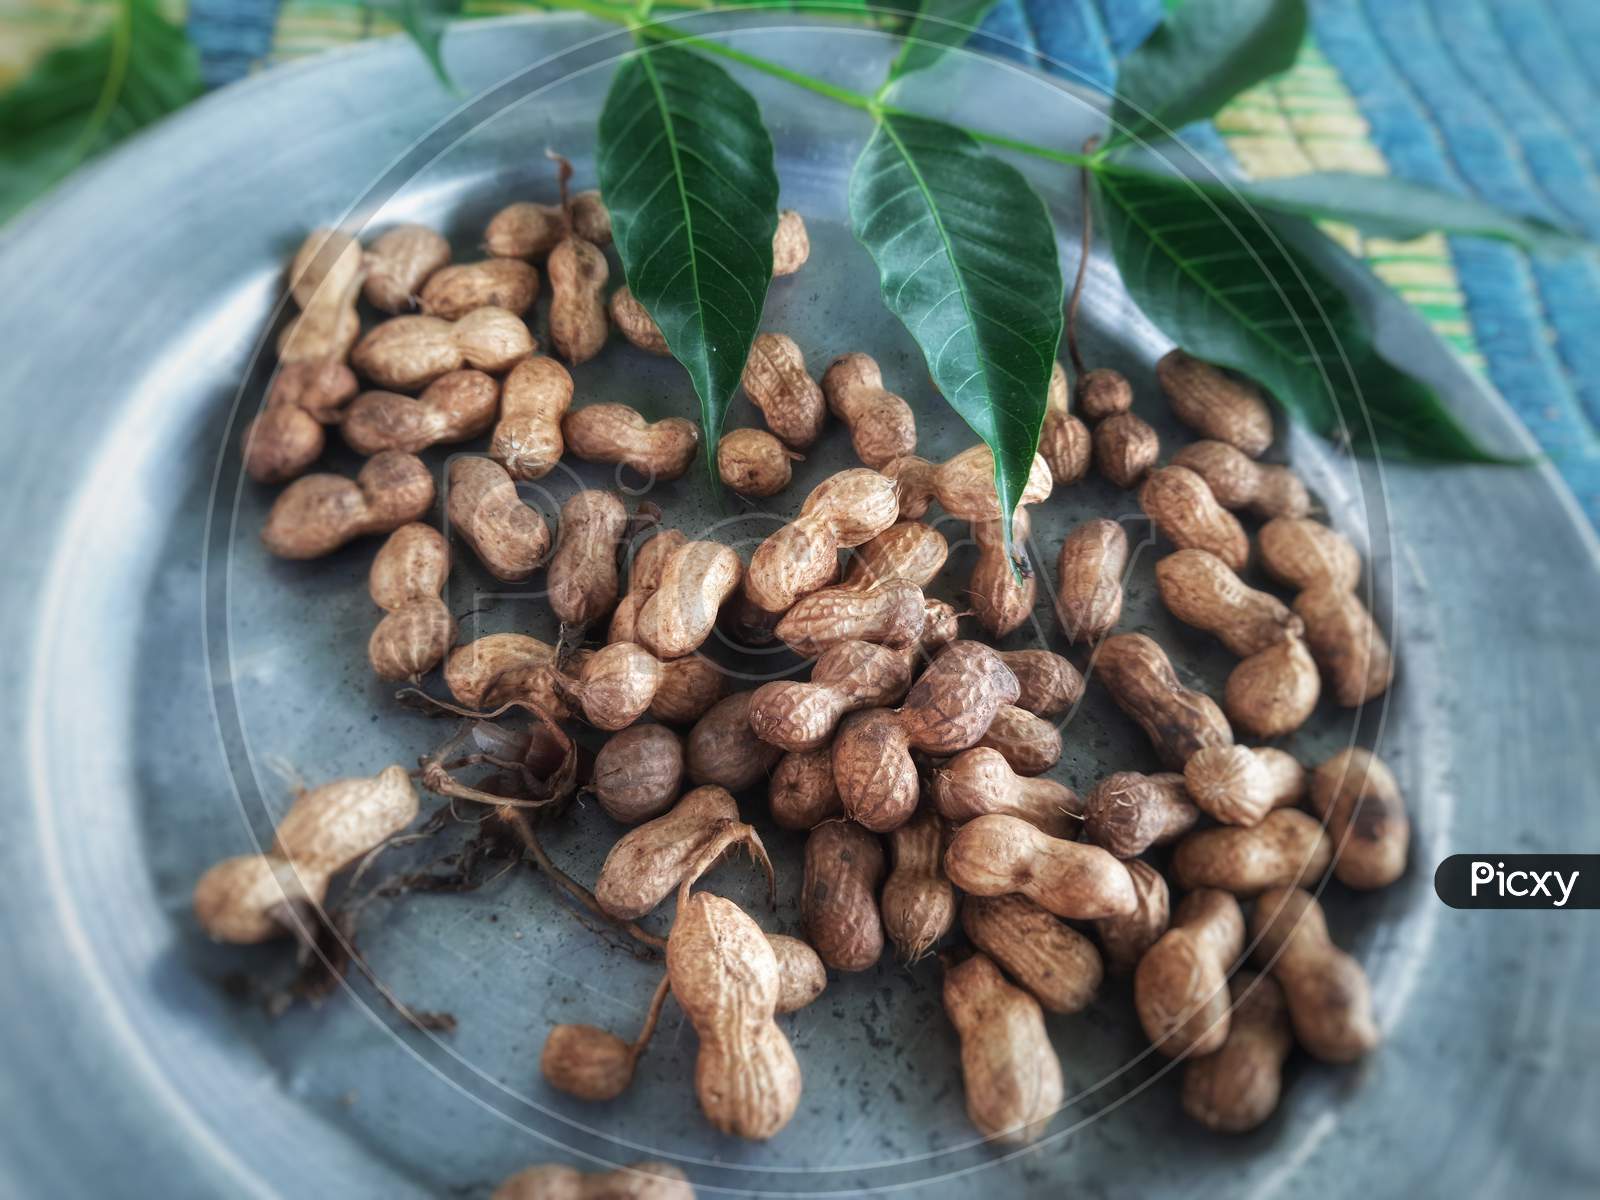 Beautiful looking peanuts